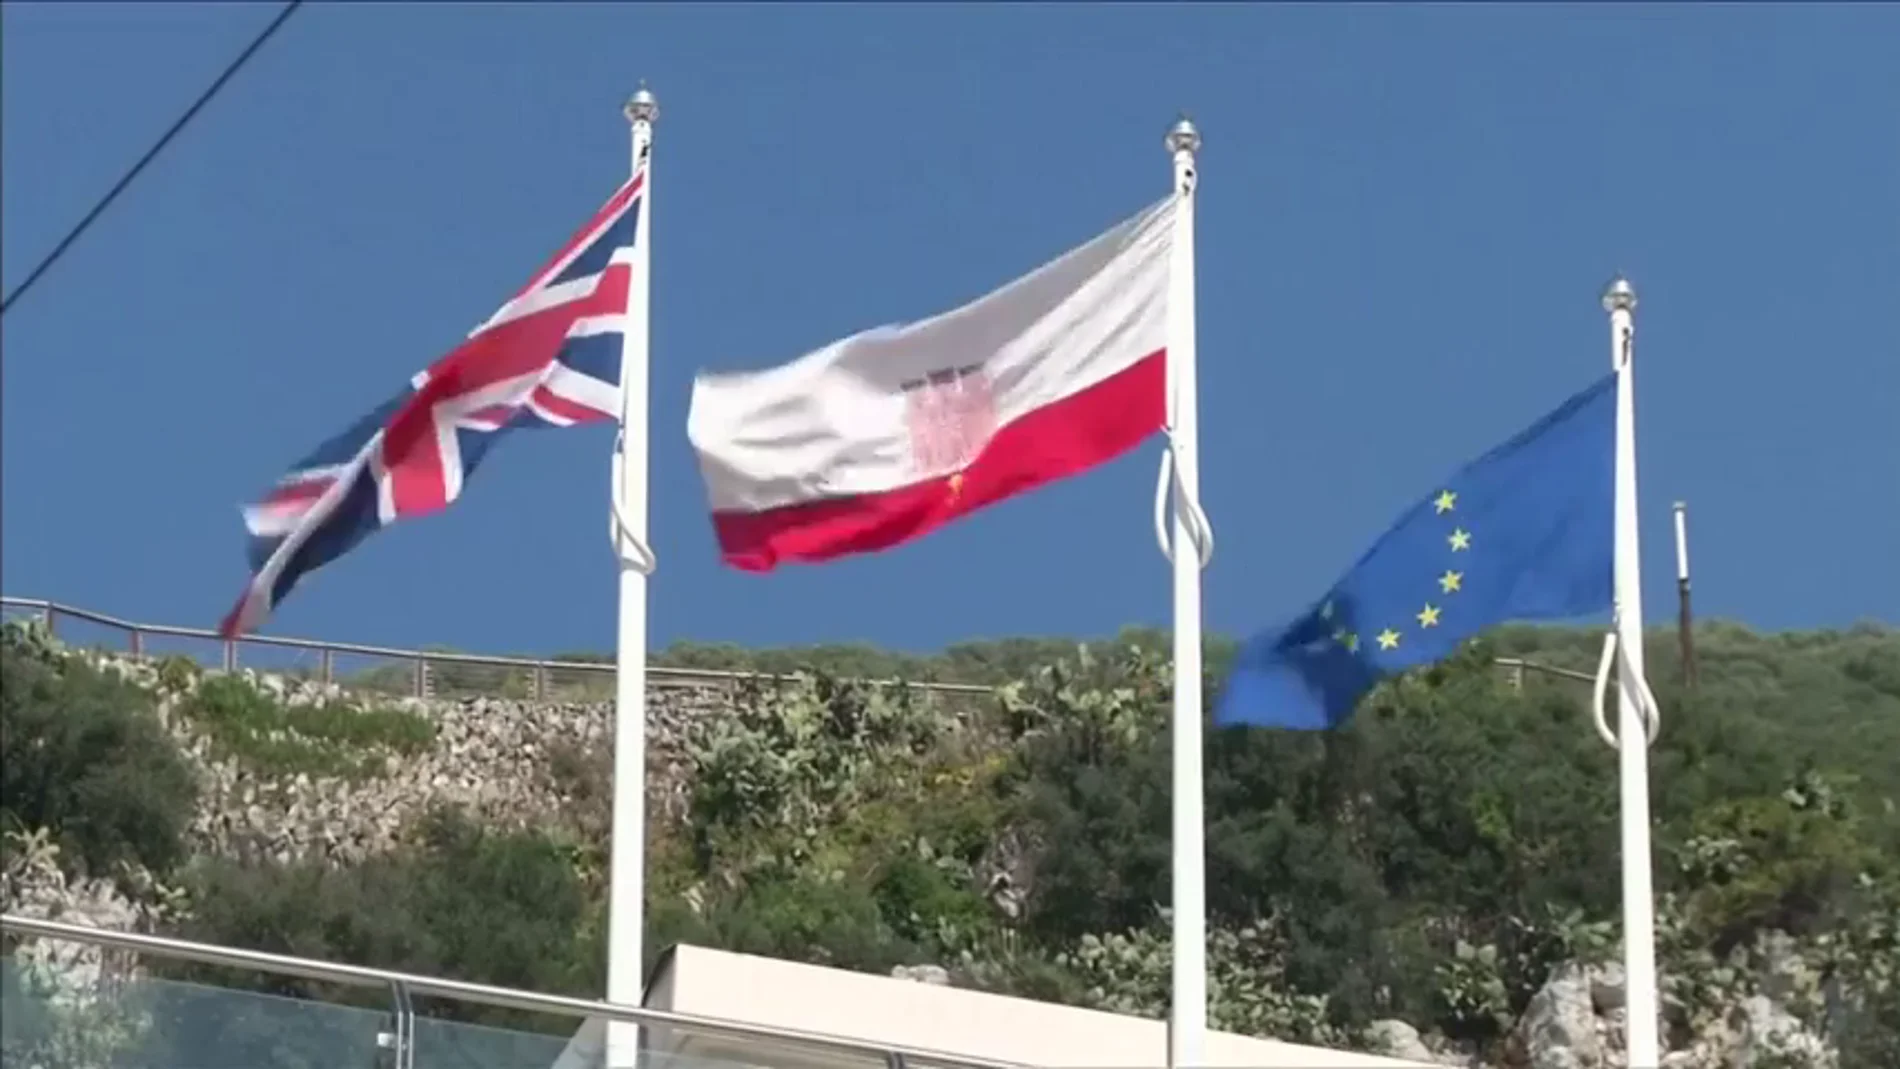 Frame 53.959971 de: Gibraltar: el “Brexit” no cambiará la reivindicación española de soberanía